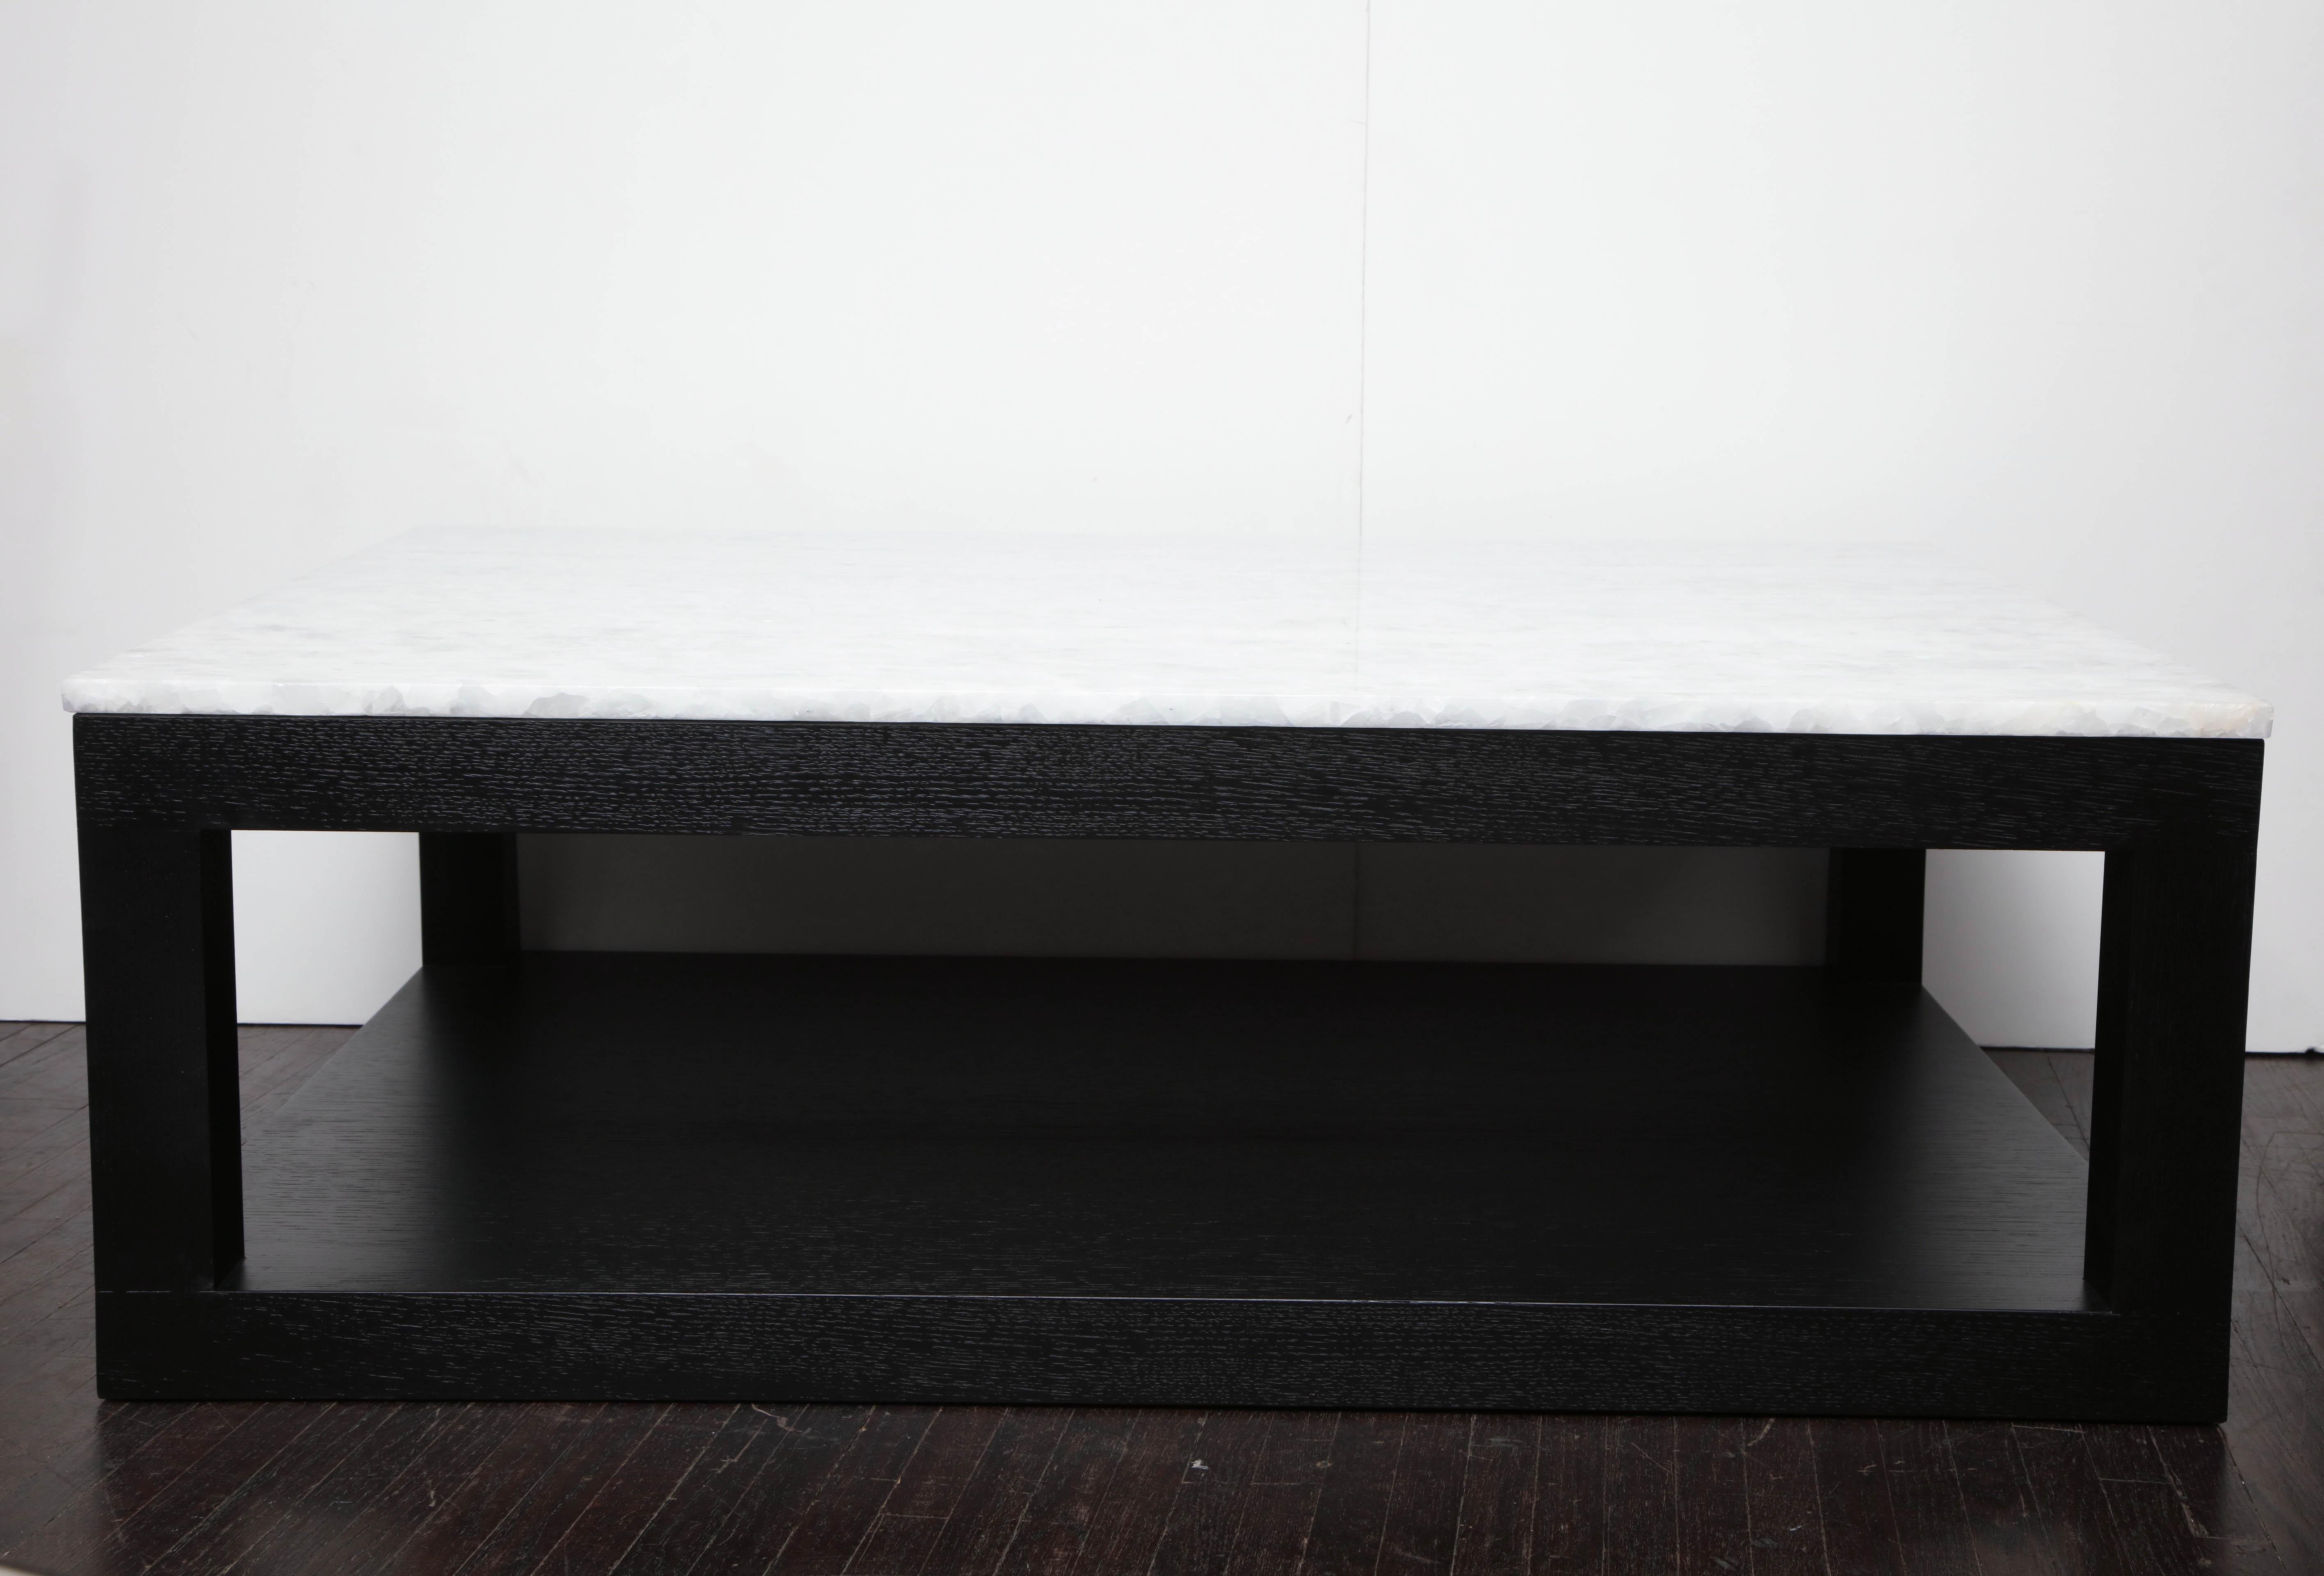 Table basse en quartz cristallisé sur mesure avec base en bois ébonisé. La personnalisation est disponible dans différentes tailles, finitions de base et plateaux en quartz.